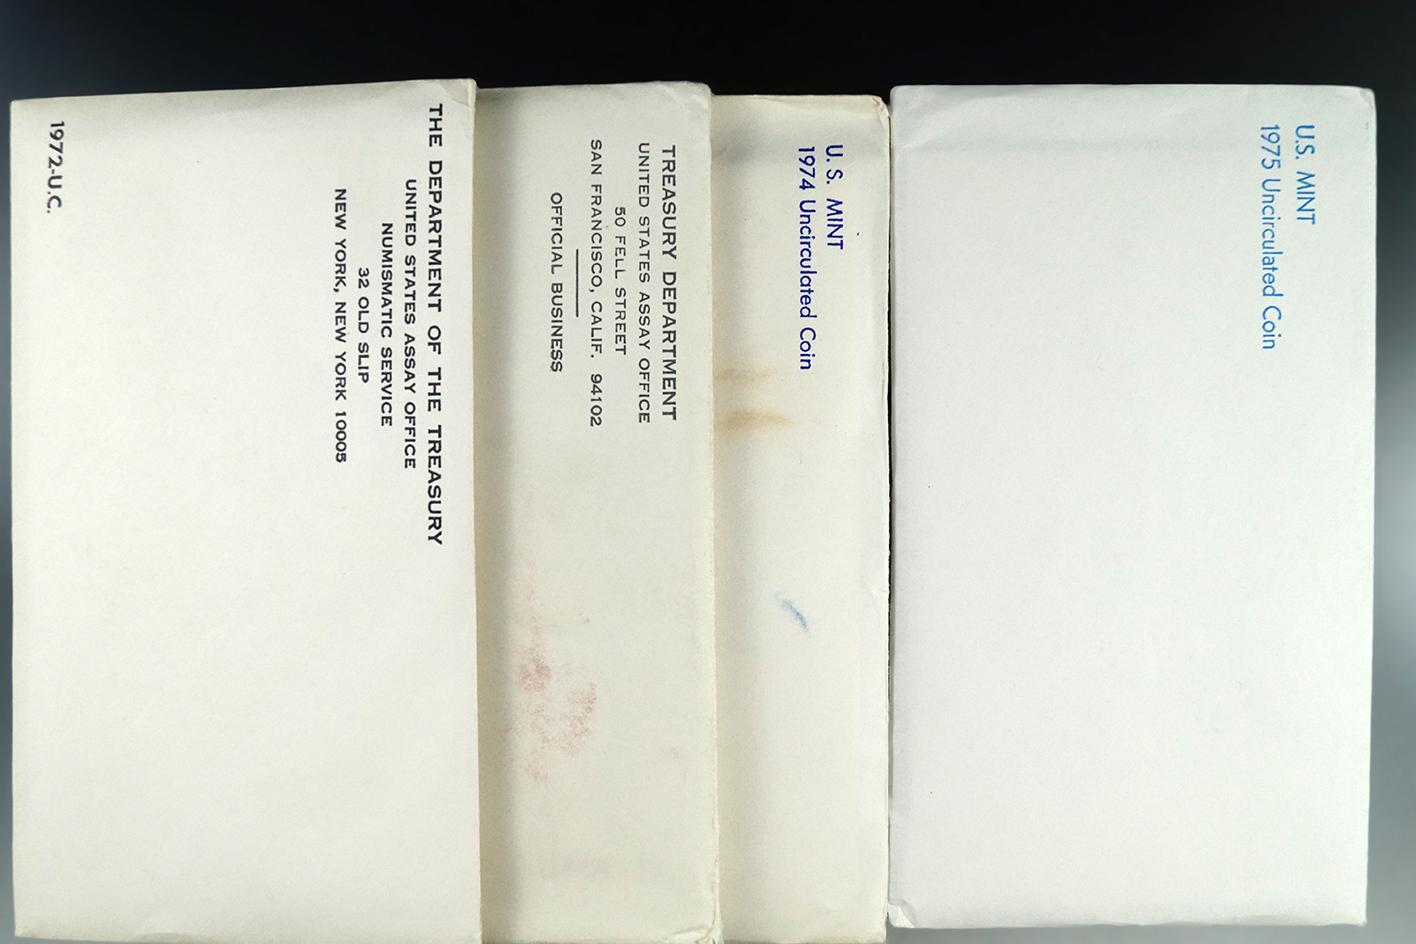 1971, 1972, 1974 and 1975 Mint Sets in Original Envelopes